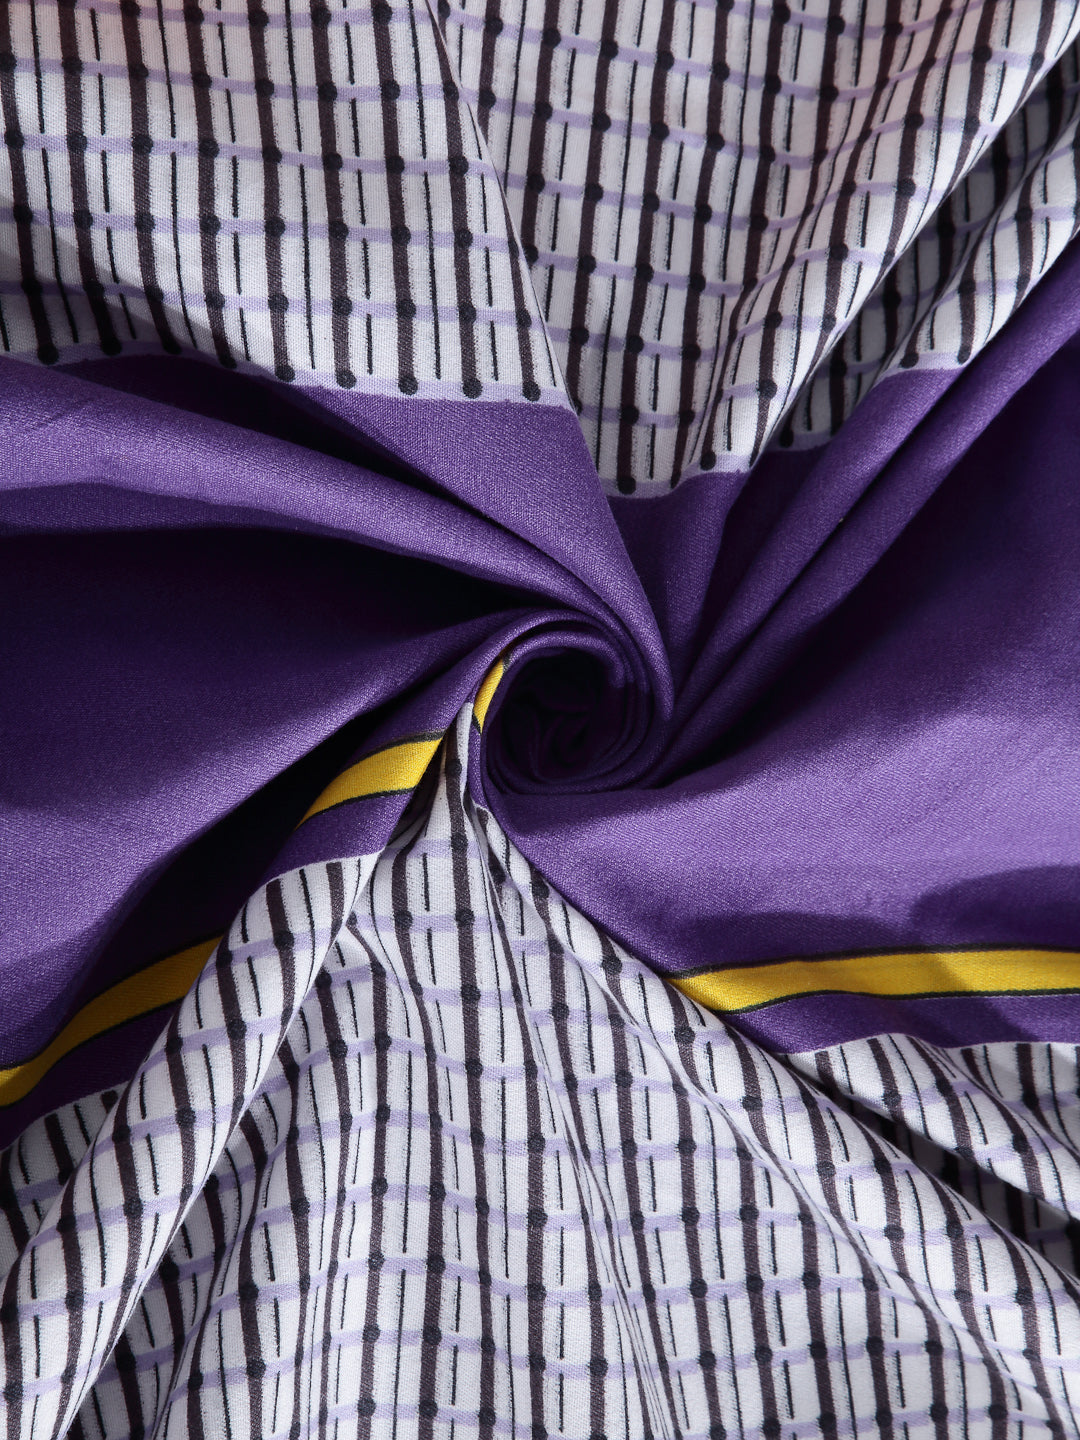 Arrabi Multi Stripes TC Cotton Blend Single Size Bedsheet with 1 Pillow Cover ( 215 X 150 cm)